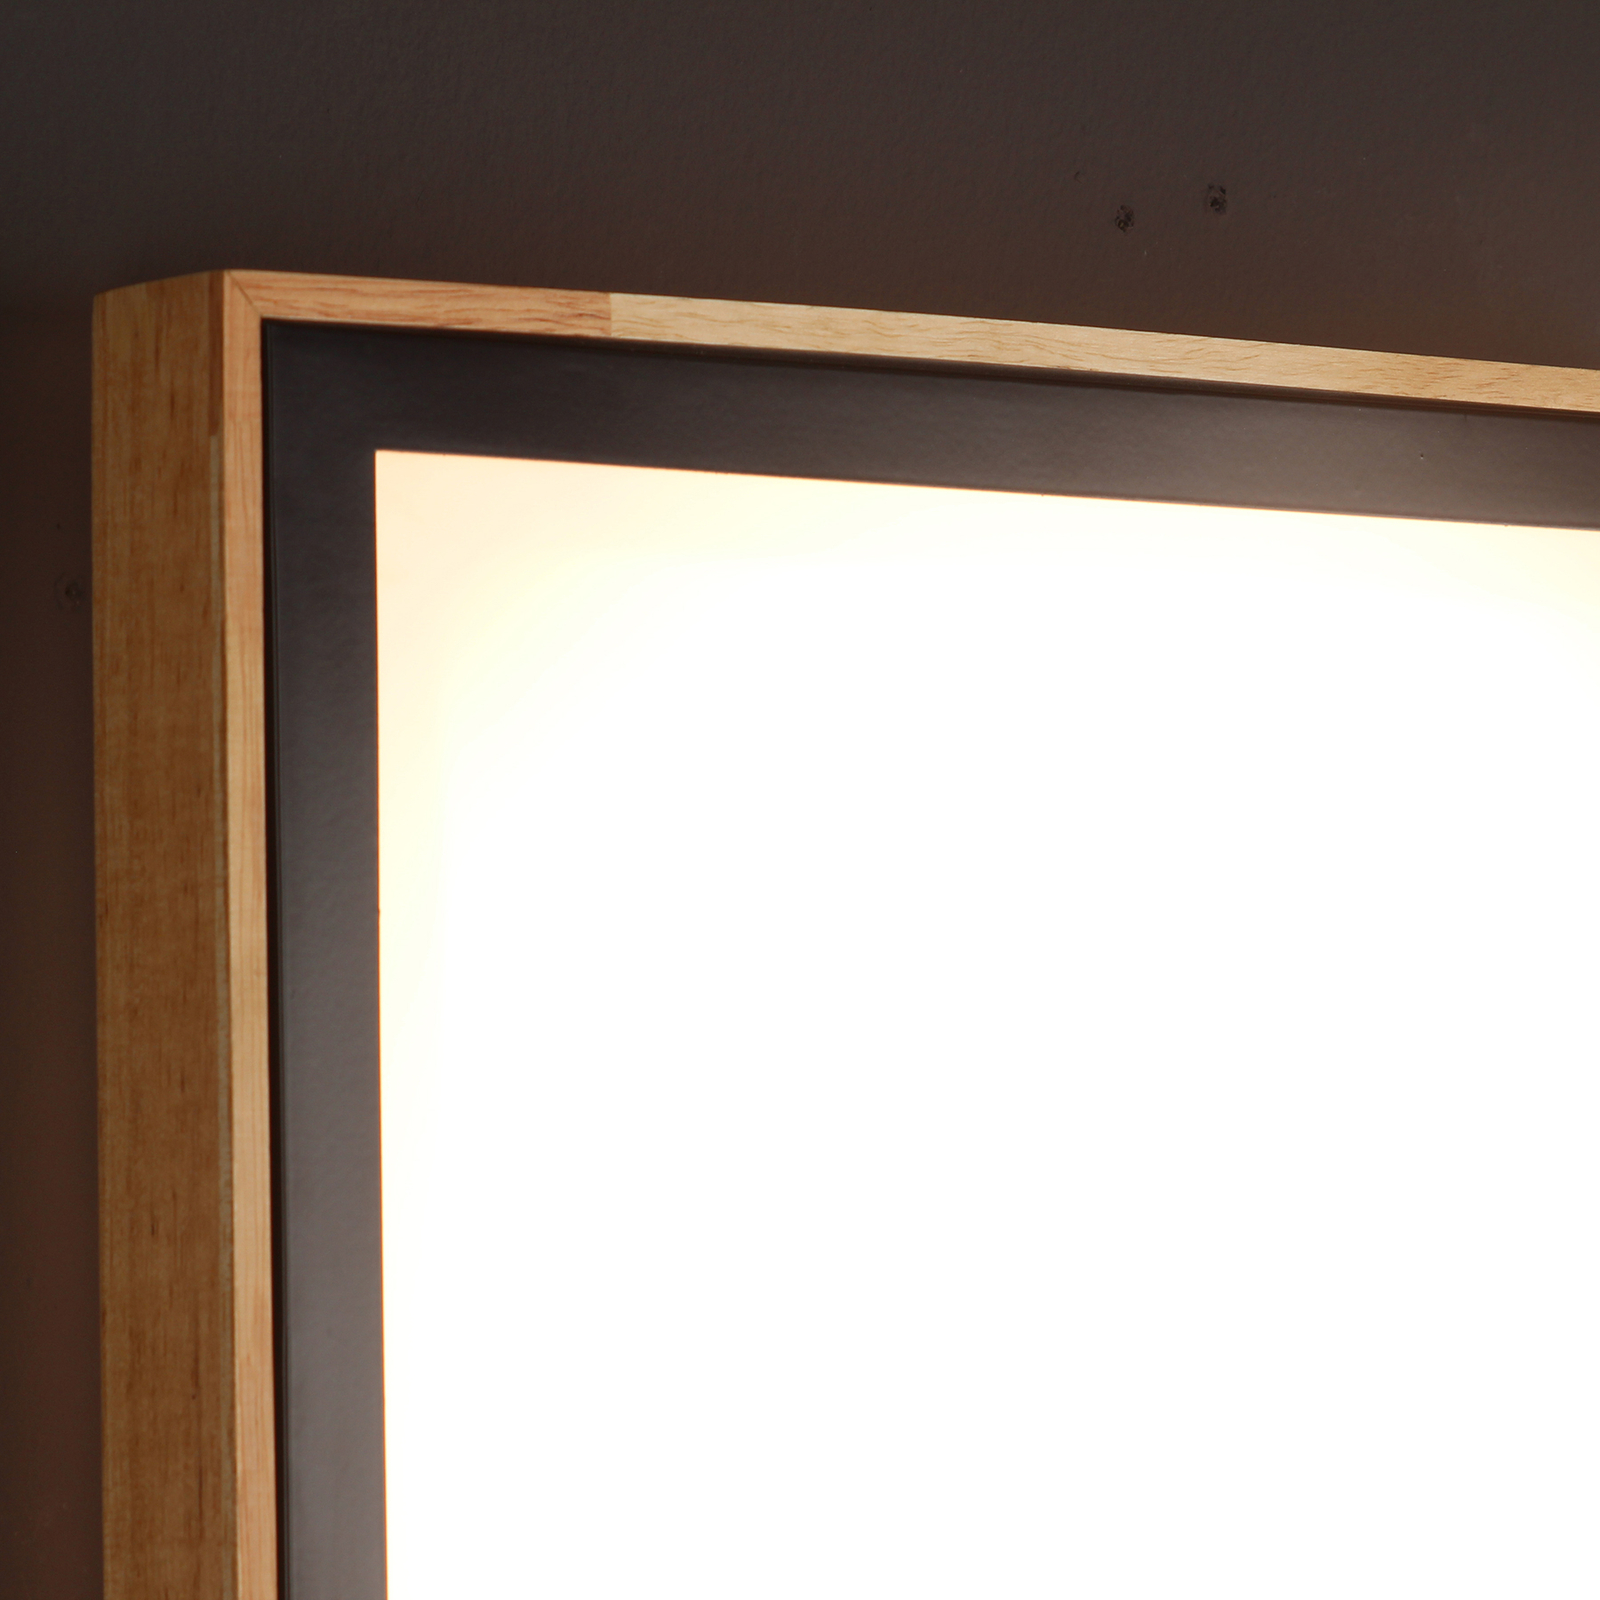 LED lubų šviestuvas "Solstar" kampinis 39 x 39 cm